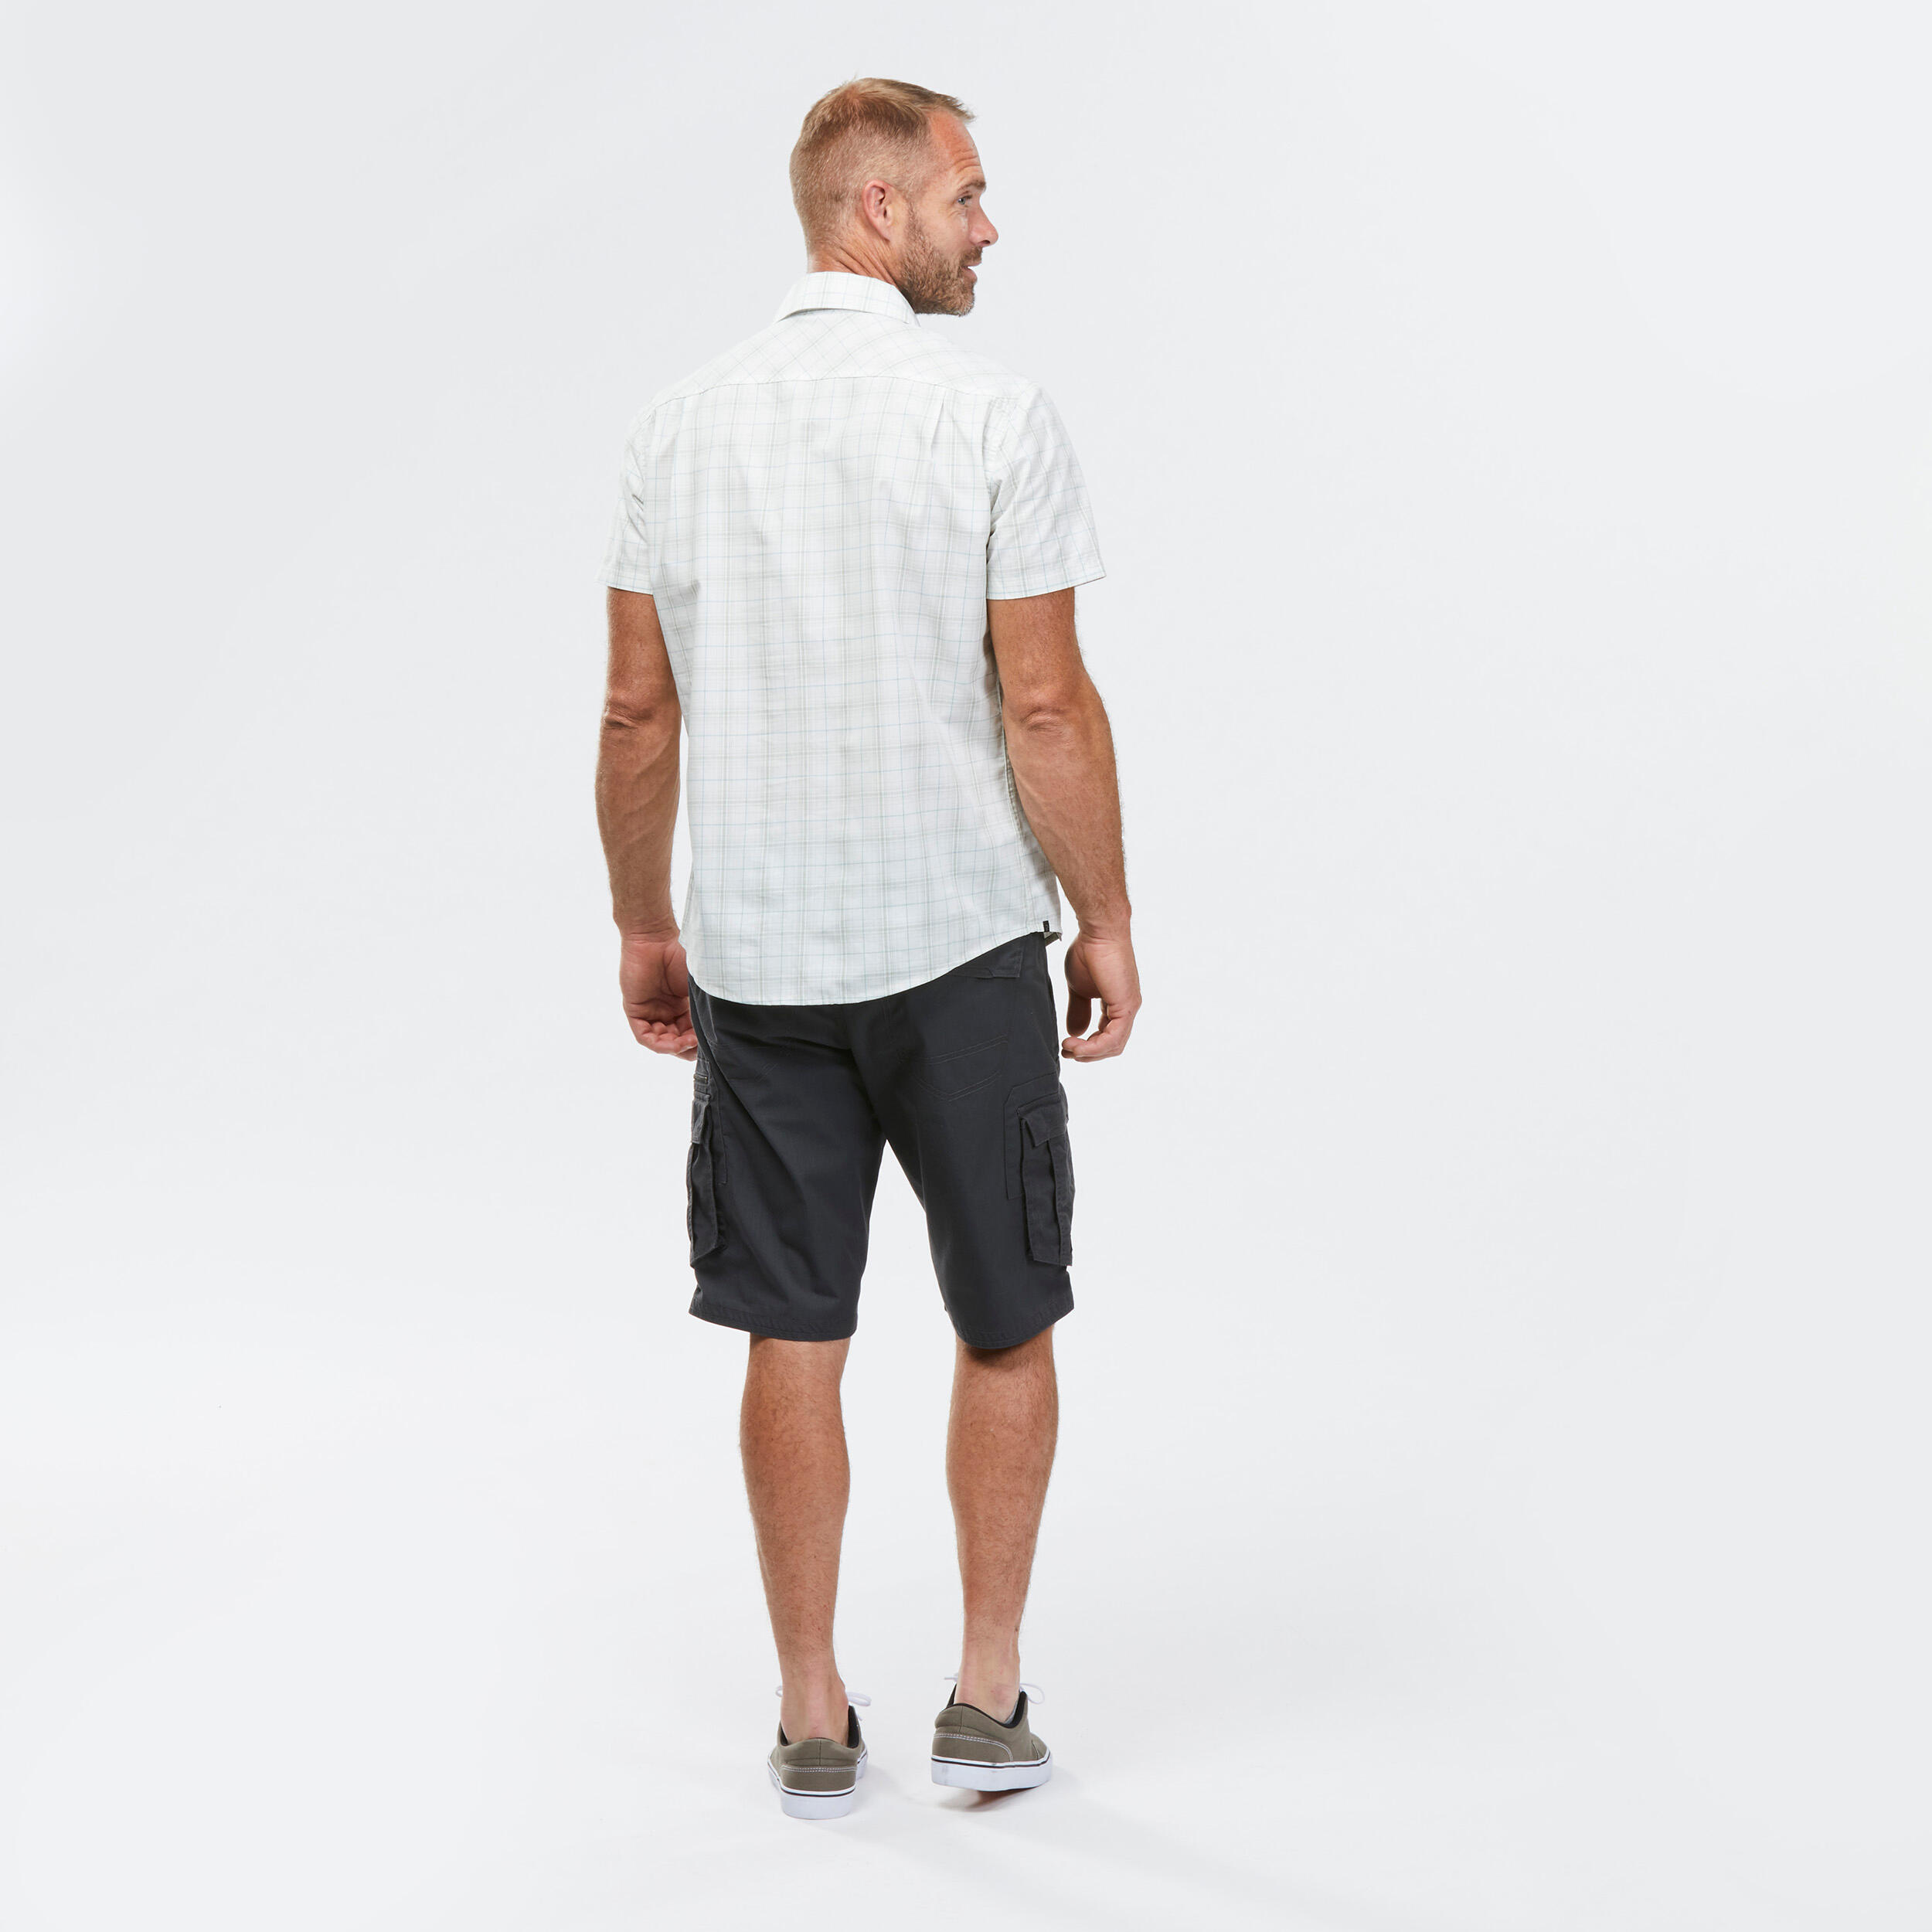 Men’s Short-sleeve Check Travel Trekking Shirt TRAVEL 100 - White  5/6